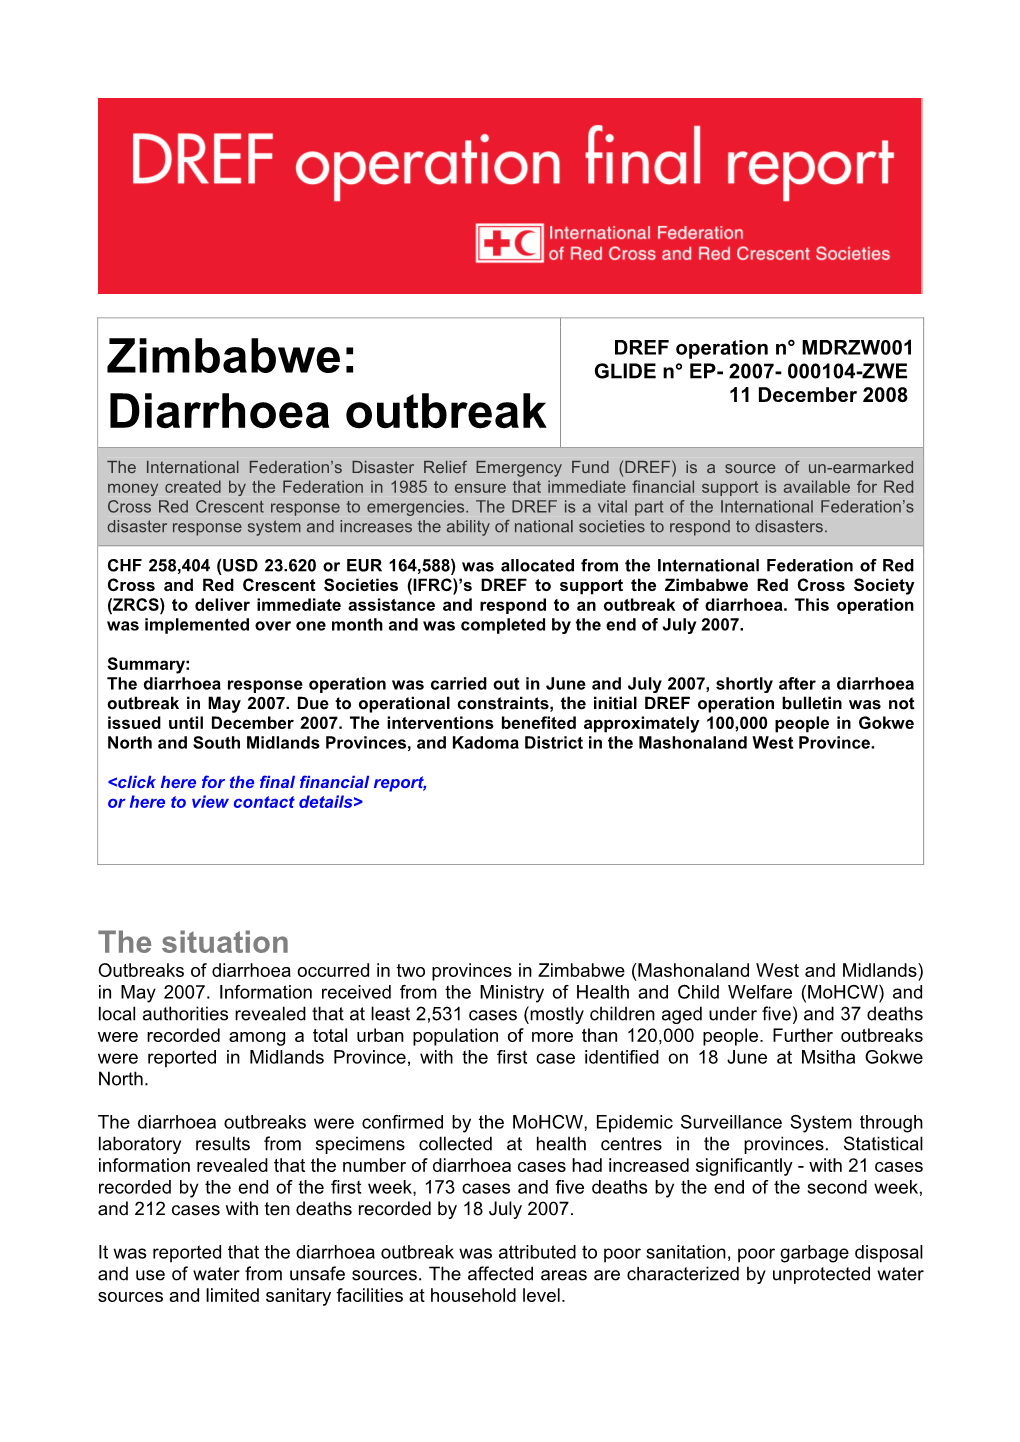 Zimbabwe: Diarrhoea Outbreak: MDRZW001: Final Report